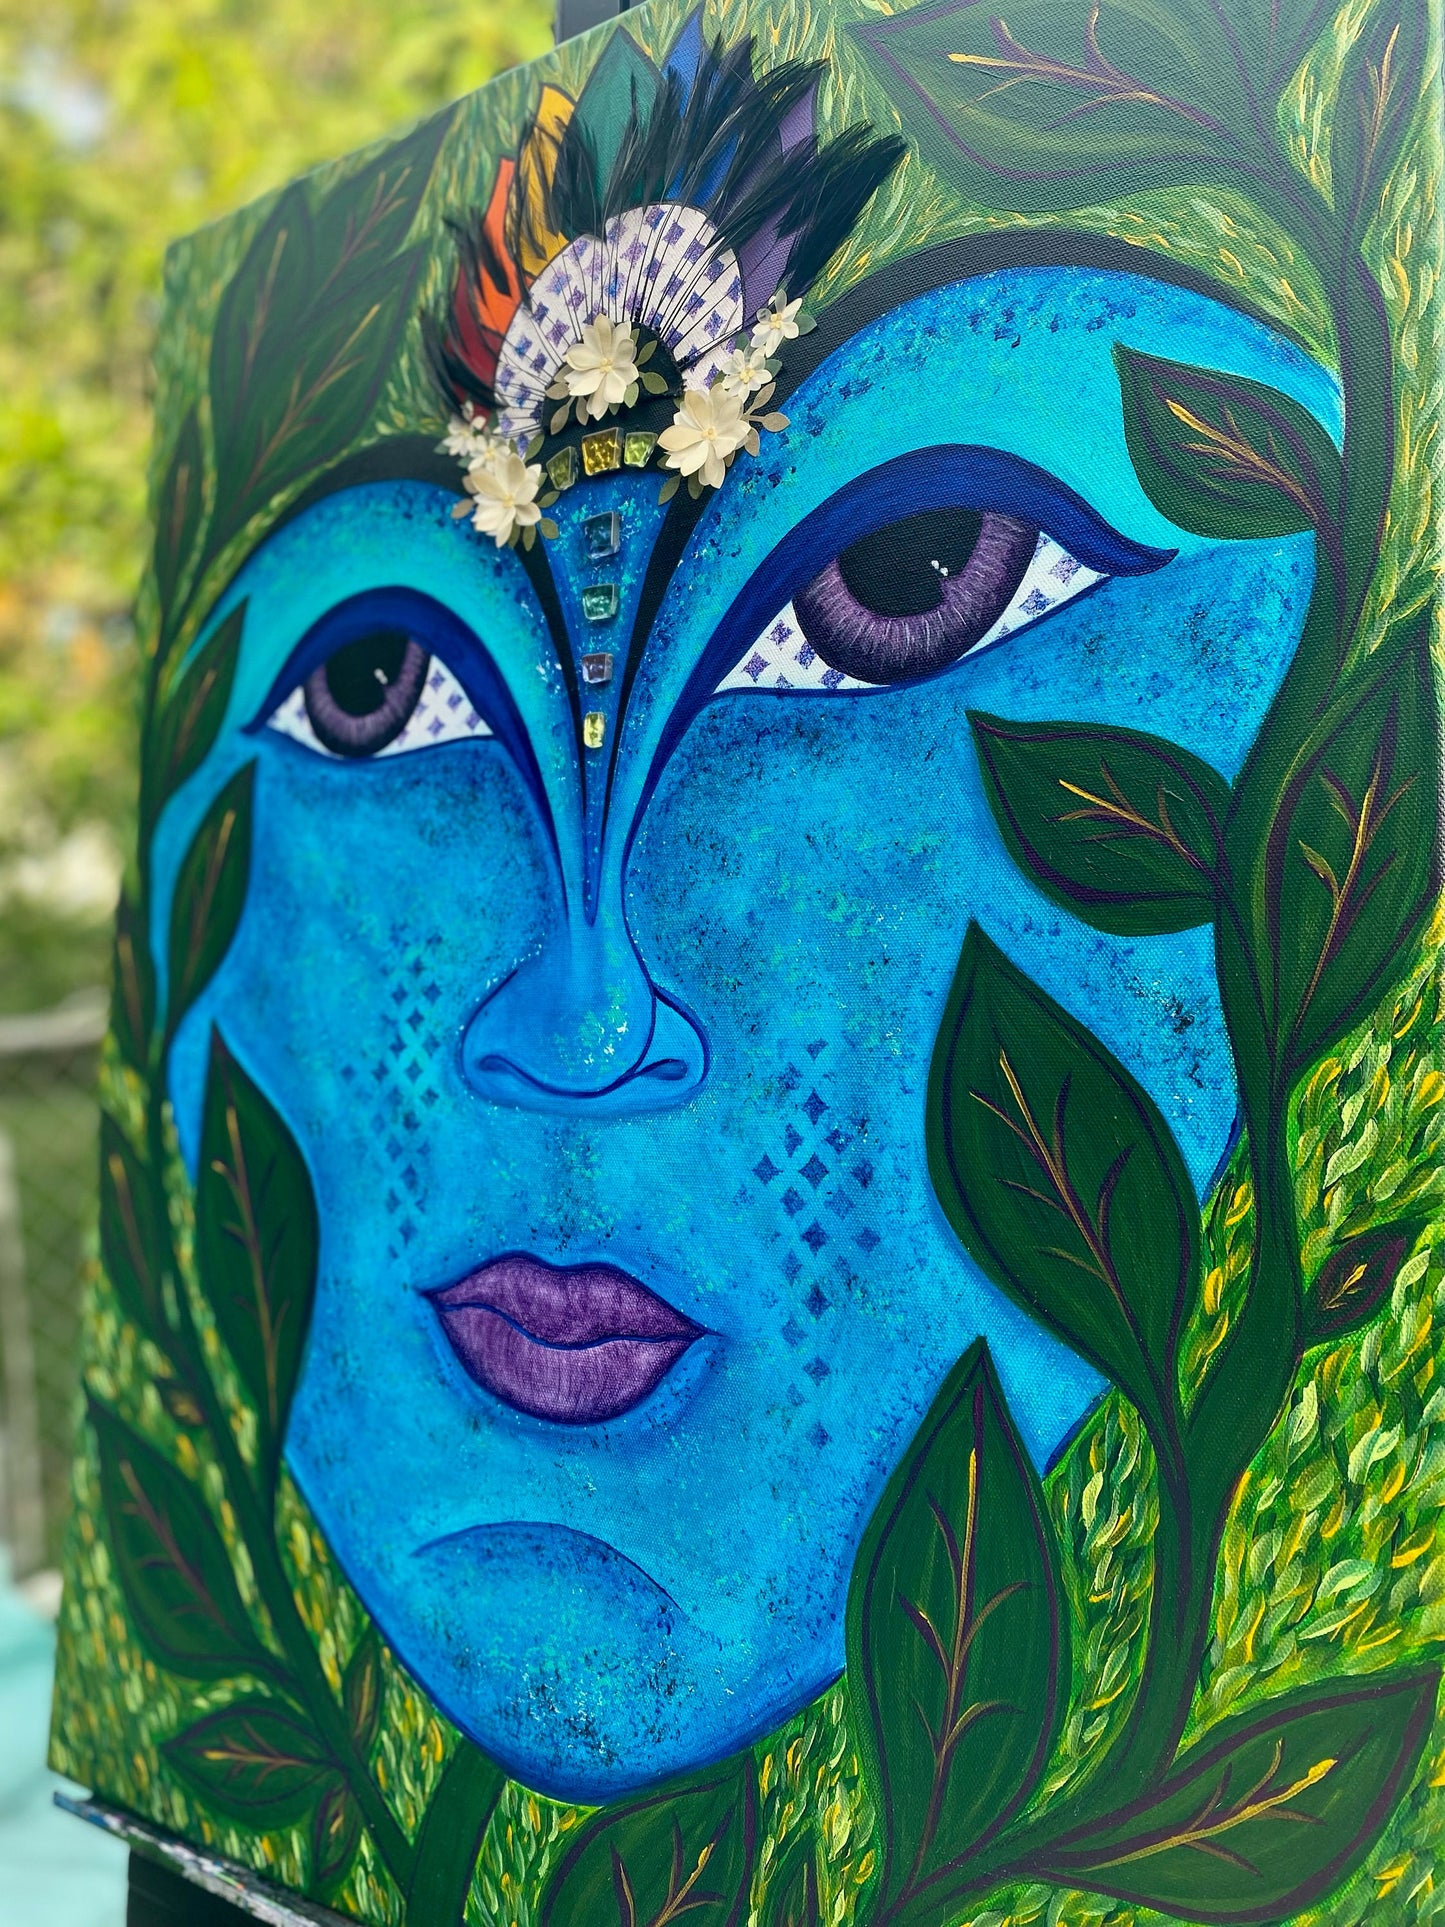 Nature Goddess Spiritual Artwork Original Mixed Media Acrylic Painting